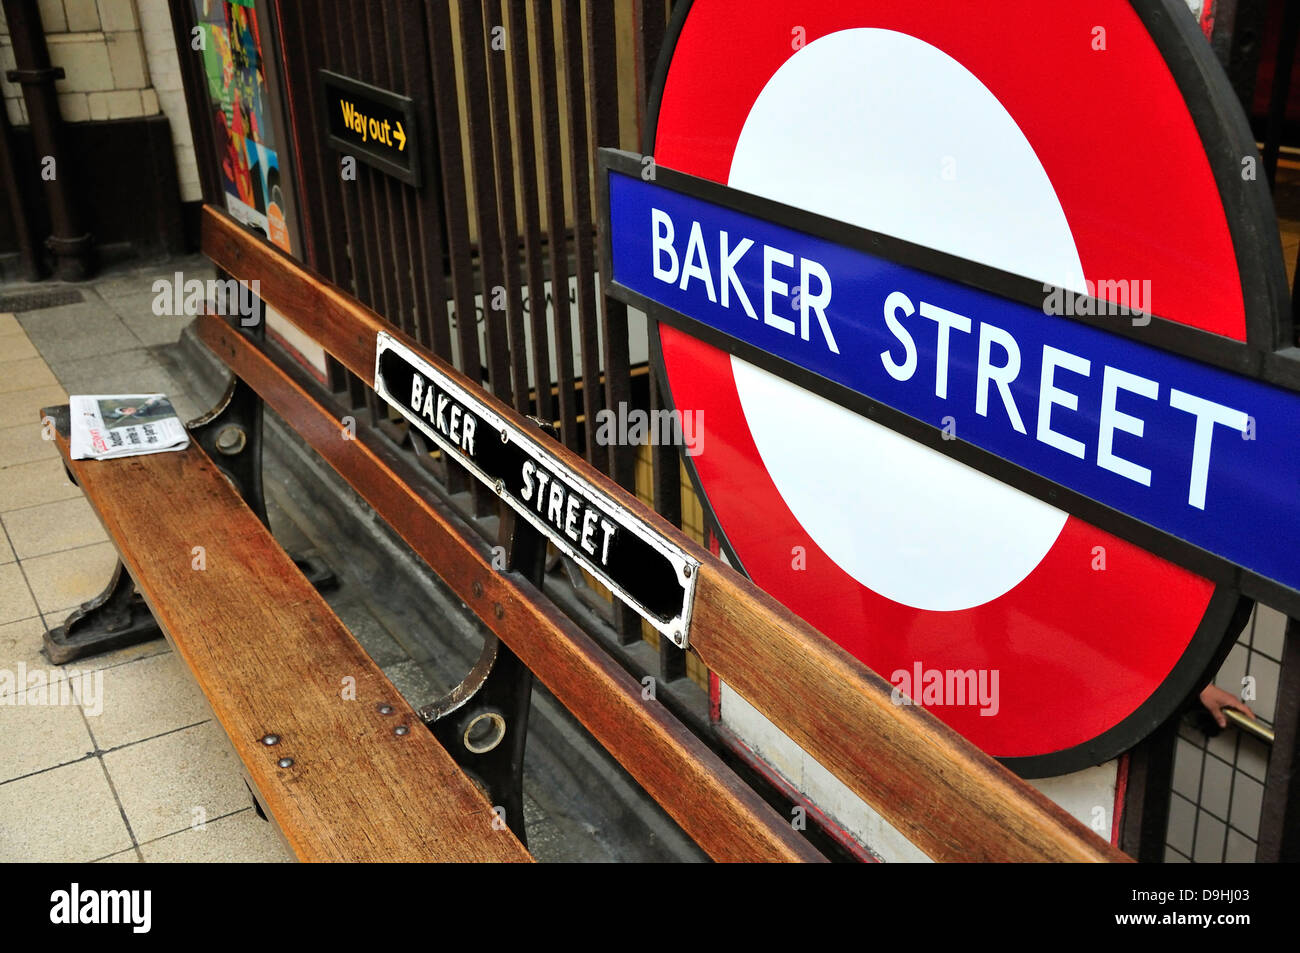 Londres, Angleterre, Royaume-Uni. La station de métro Baker Street. Banc et cocarde Banque D'Images